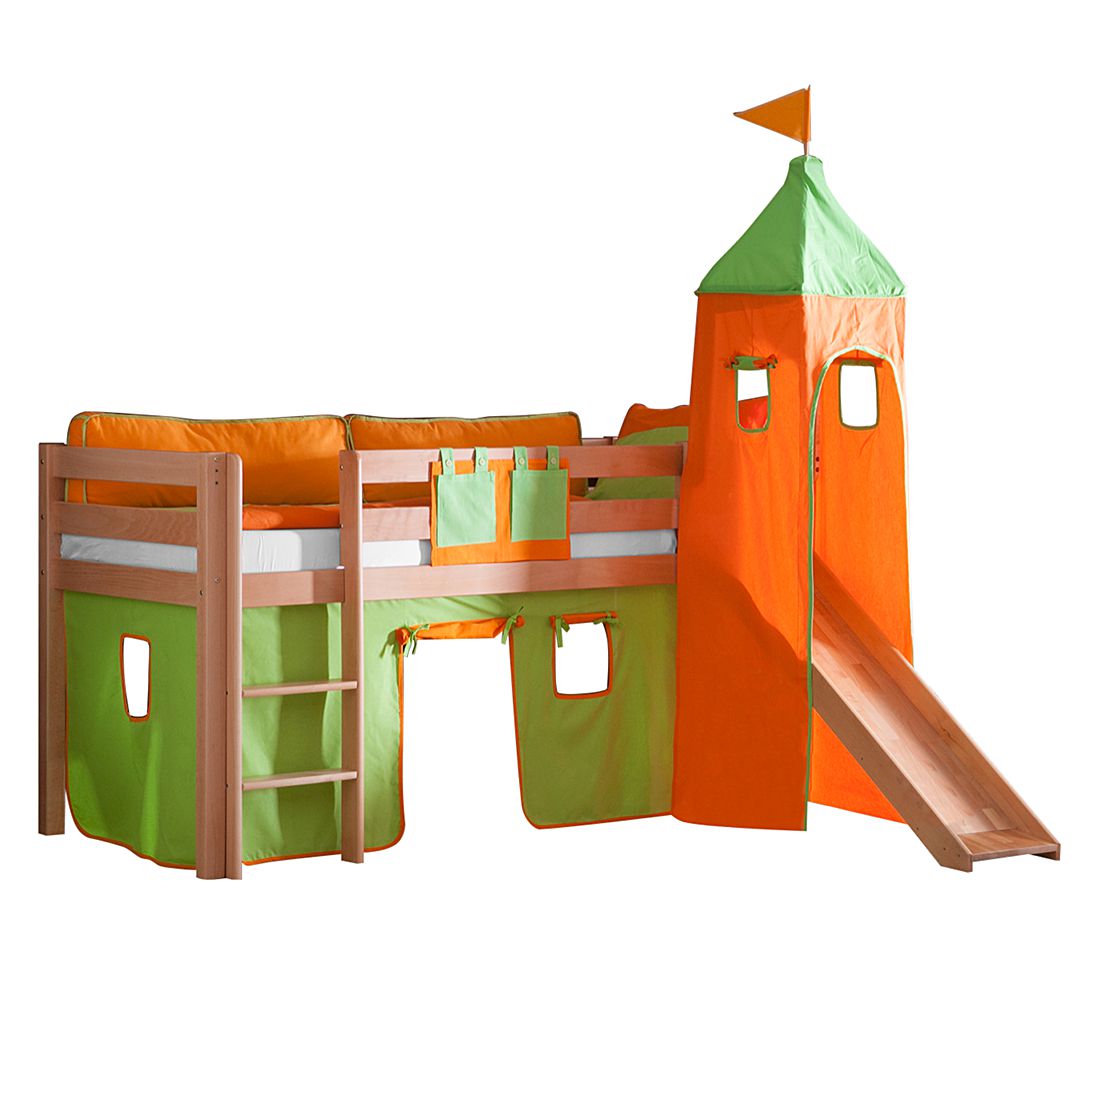 Spielbett Alex - mit Rutsche, Vorhang, Turm und Tasche - Buche natur/Textil grün-orange, Relita